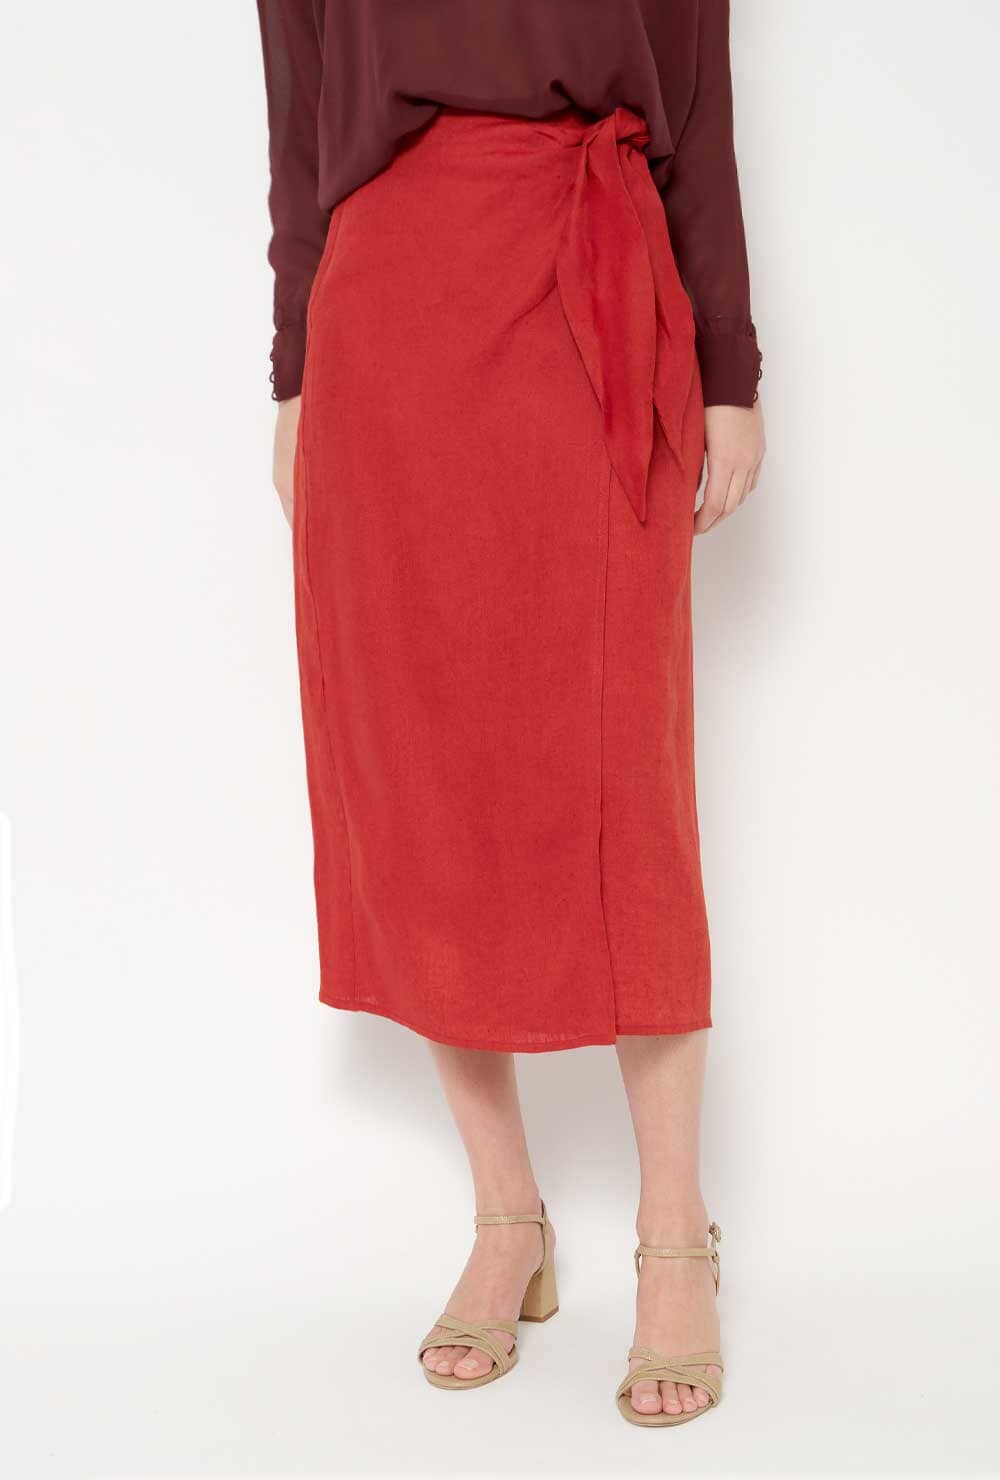 Tiagua Skirt Red Skirts Alava Brand 